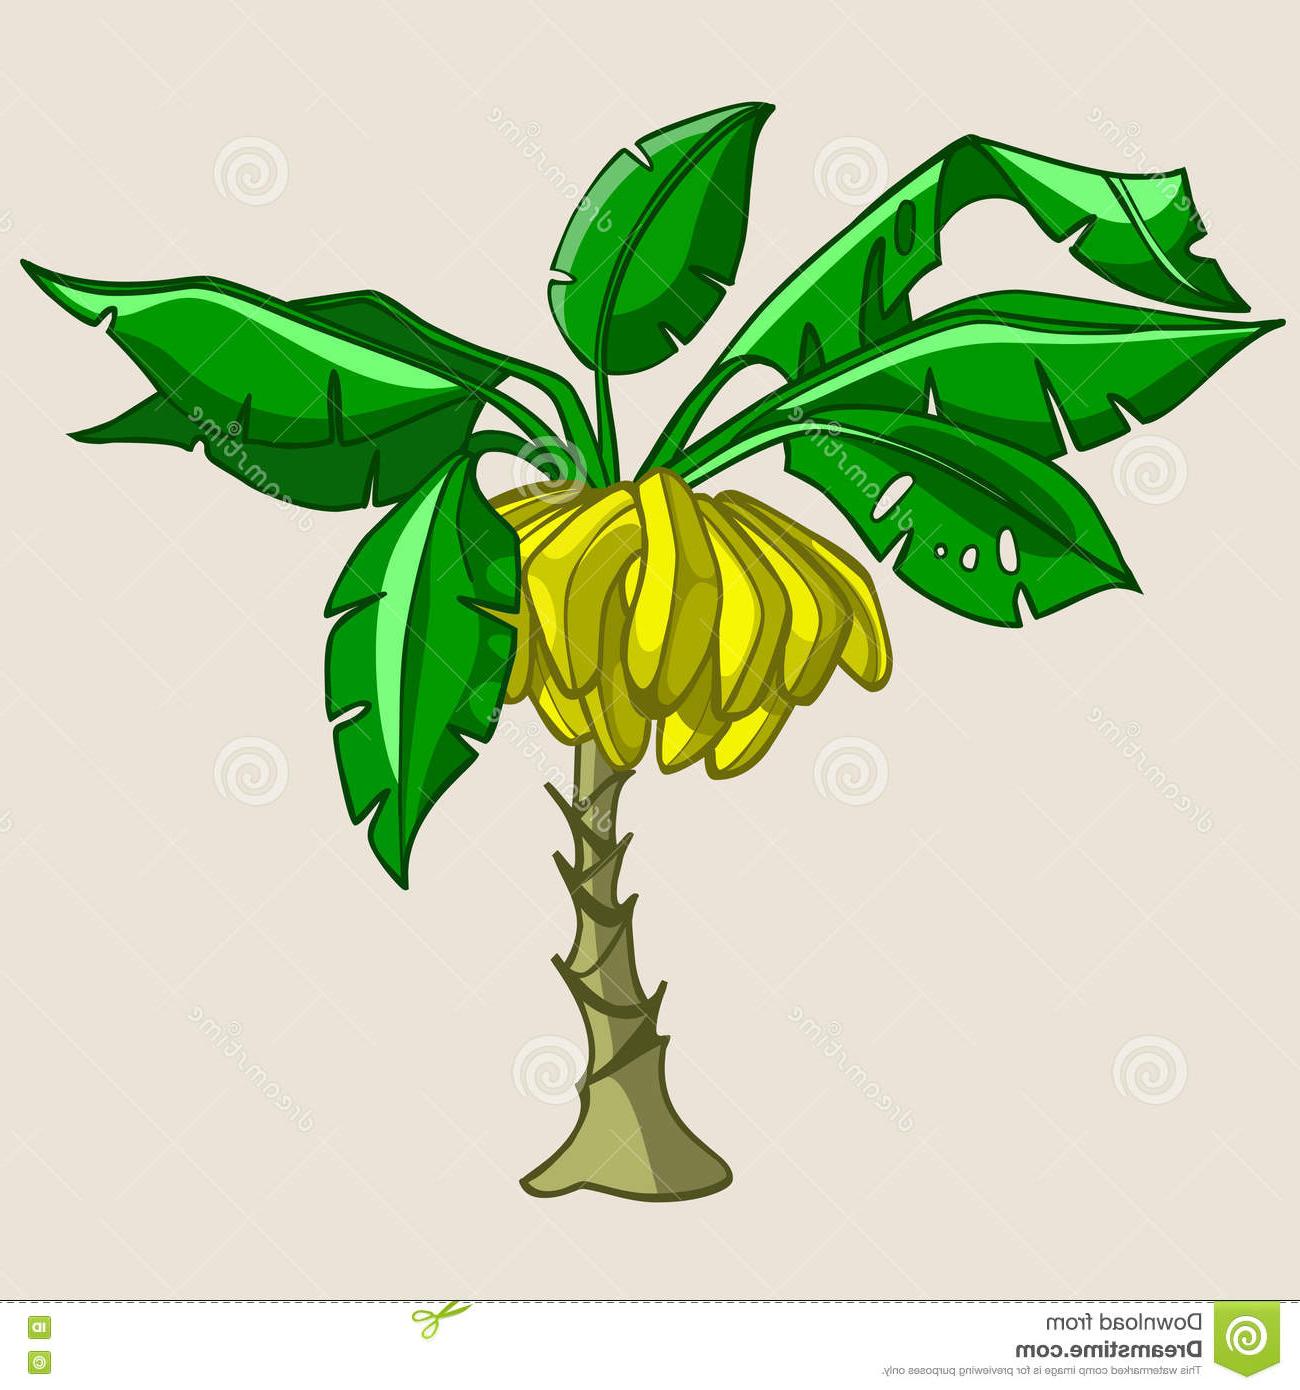 Top banana tree.